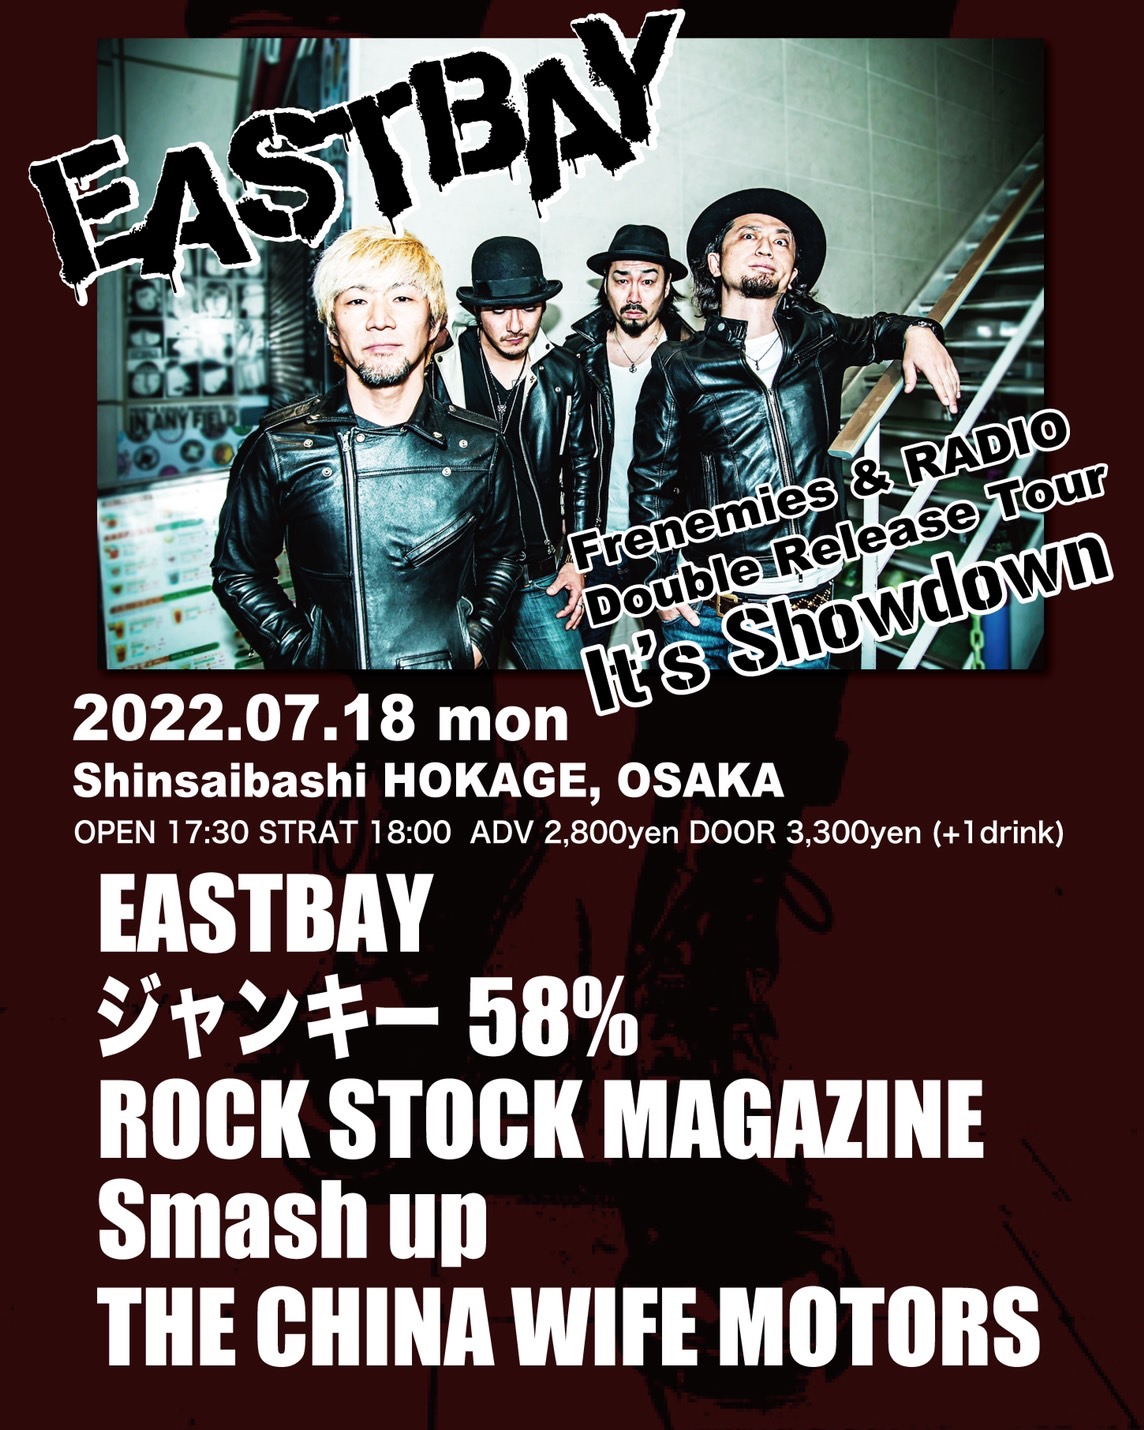 EASTBAY Release Tour “It’s Showdown!” in Osakaの写真